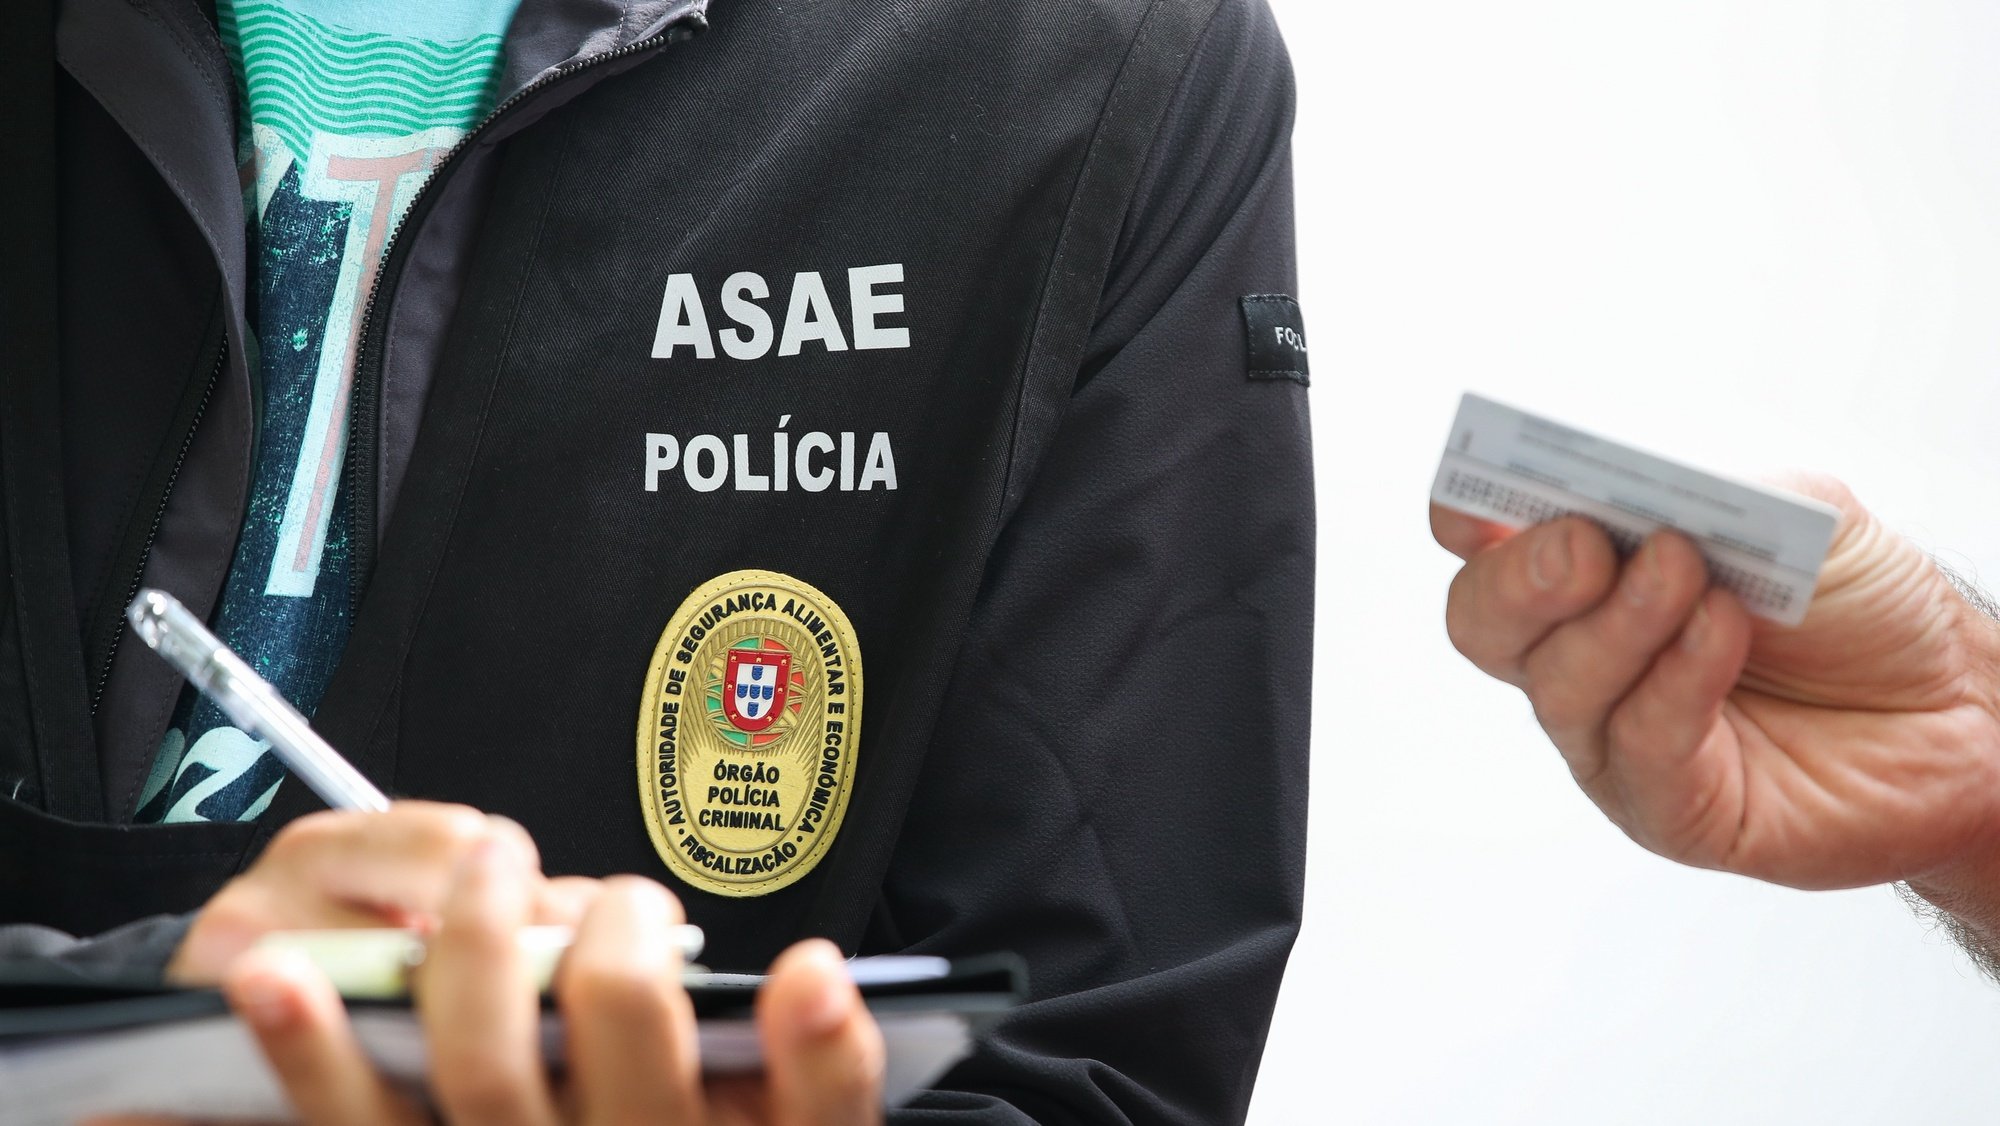 Um elemento da Autoridade de Segurança Alimentar e Económica (ASAE) durante uma operação nacional de fiscalização de transporte de mercadorias, em Coimbra, 17 de junho de 2021. PAULO NOVAIS/LUSA